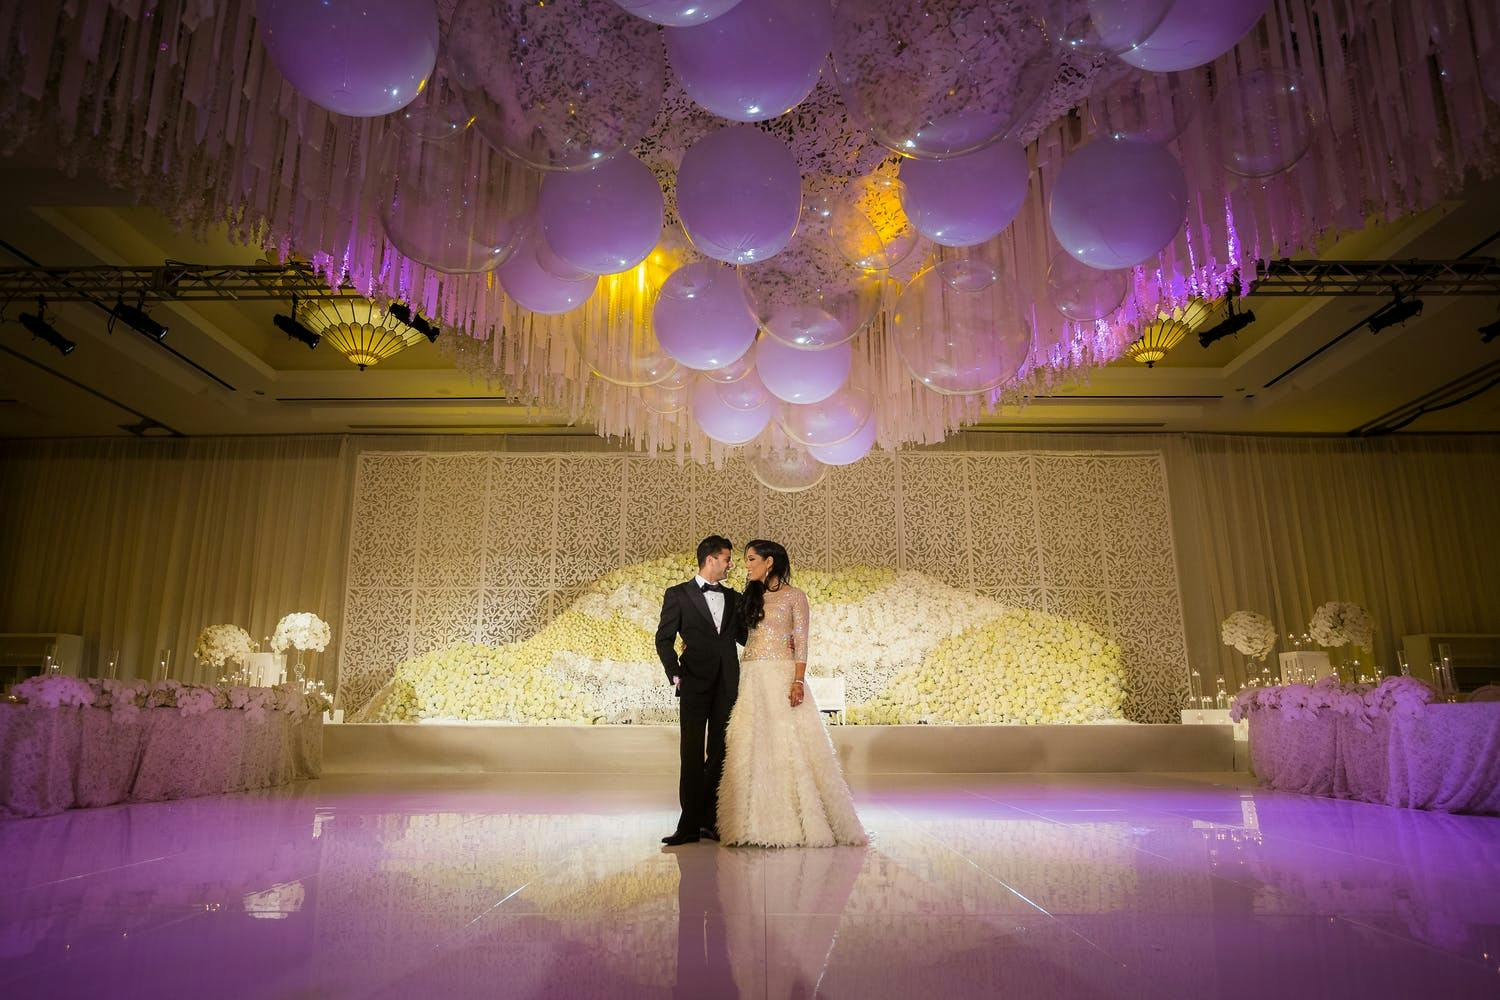 Жених и невеста стоят на танцполе с фиолетовой подсветкой и под свадебным потолком, украшенным мерцающими воздушными шарами | PartySlate